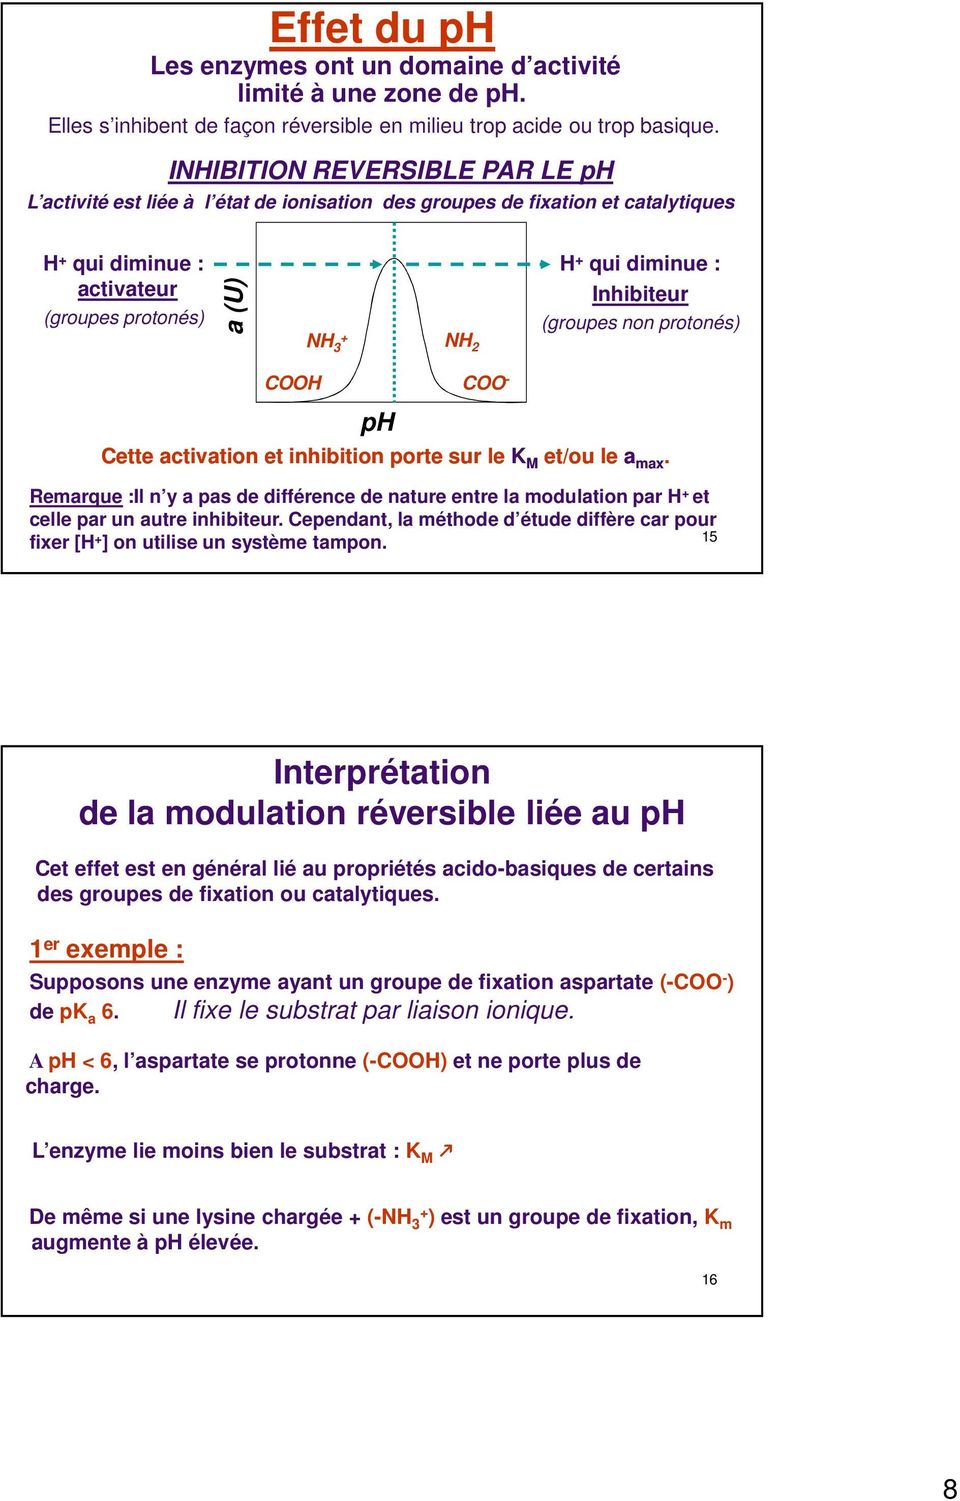 (groupes non protonés) COOH ph COO - Cette ctivtion et inhibition porte sur le K M et/ou le mx. Remrque :Il n y ps de différence de nture entre l modultion pr H et celle pr un utre inhibiteur.